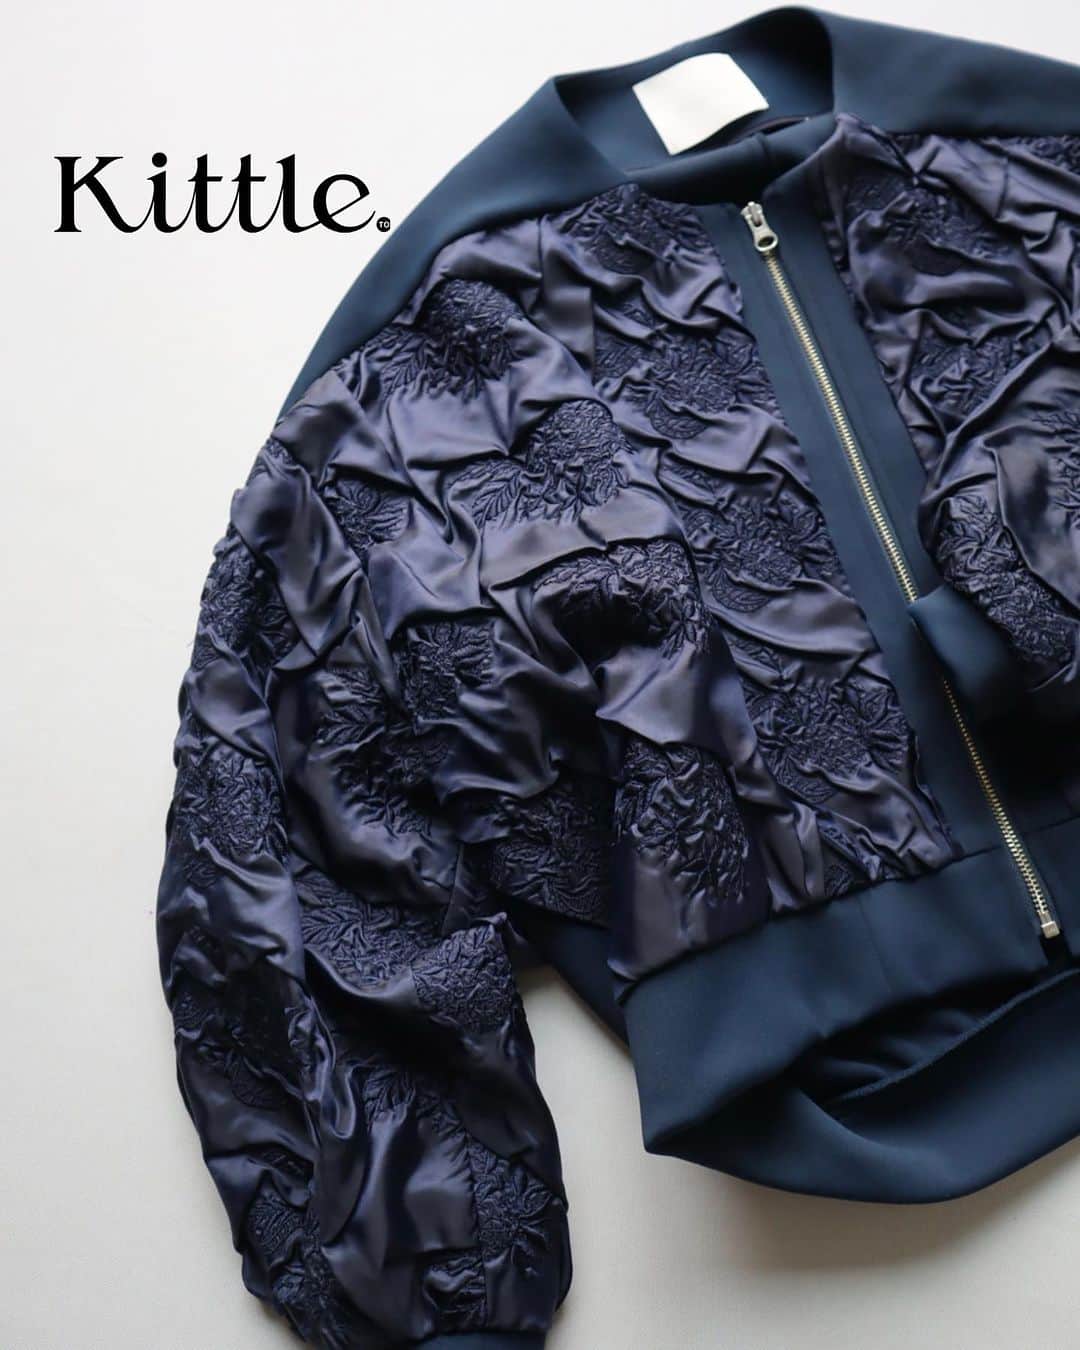 kittleのインスタグラム：「Kittle.original ⁡ おすすめのブルゾン。 残りわずかとなりました。Kittle.originalの生地を 使用しております。 Tシャツに羽織っても良し。これから寒くなる時は、ニットや暖かいインナーの上に羽織っても良し。 とても軽いし、風通しもしづらいです。 ⁡ ⁡ 【LINE友達追加でオンラインストア限定のお得なクーポンもらえます】 https://lin.ee/Cc44uMv ⁡ #kittle #kittleto ⁡ 【𝗈𝗇𝗅𝗂𝗇𝖾 𝗌𝗍𝗈𝗋𝖾】 𝗁𝗍𝗍𝗉𝗌://𝗄𝗂𝗍𝗍𝗅𝖾𝗍𝗈.𝖼𝗈𝗆 𝖭𝖾𝗐 𝖺𝗋𝗋𝗂𝗏𝖺𝗅𝗌 →𝖤𝗏𝖾𝗋𝗒 𝖥𝗋𝗂𝖽𝖺𝗒 𝖯𝖬𝟩」